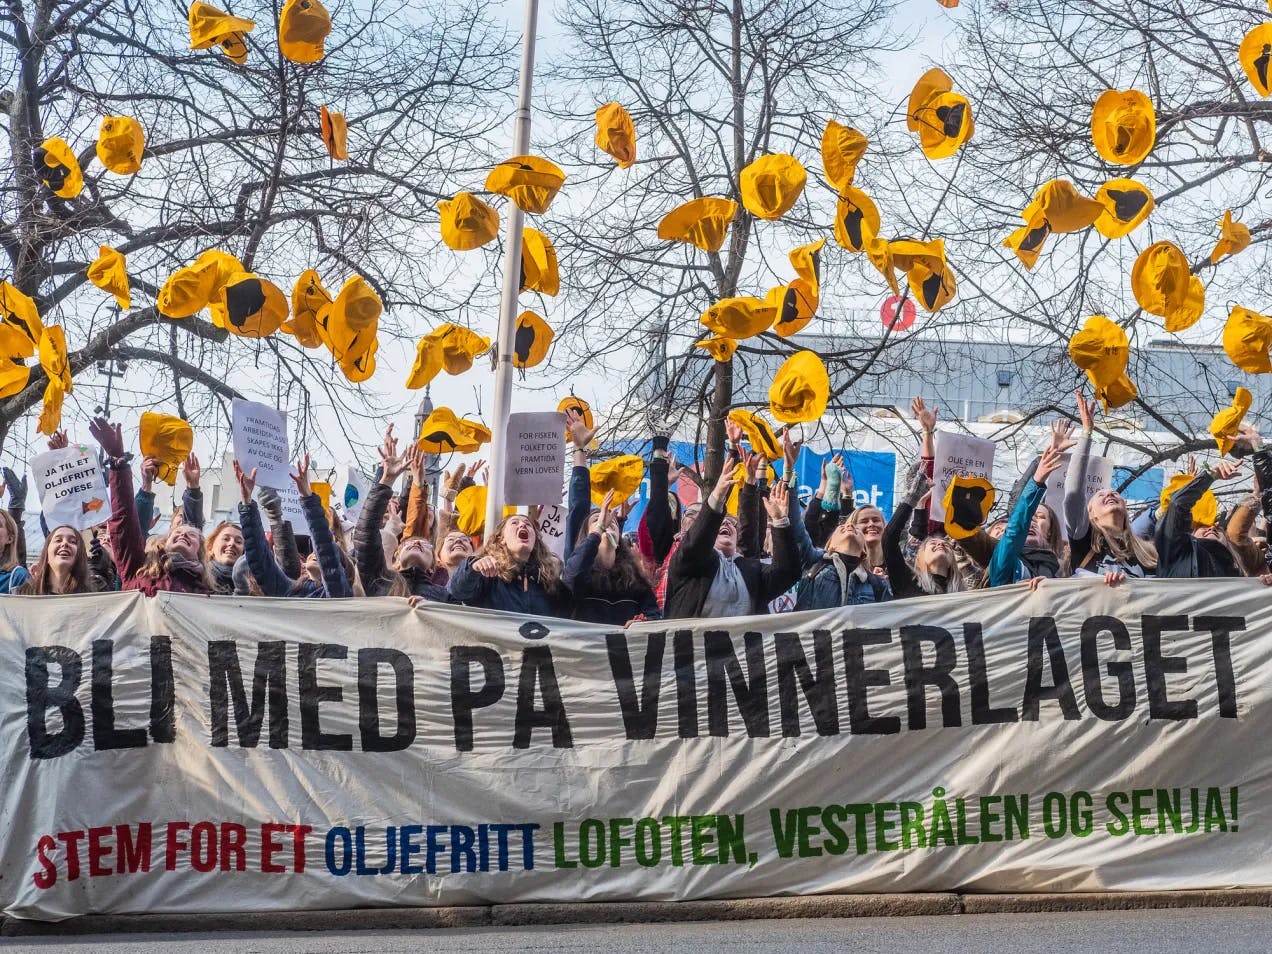 Cirka 30 ungdommer står bak et kjempestort banner hvor det står "Bli med på vinnerlaget. Stem for et oljefritt Lofoten, Vesterålen og Senja". Alle har de hver sin gule sydvest som de kaster opp i lufta i jubel. De holder også flere håndplakater med budskap om ingen olje i disse områdene.